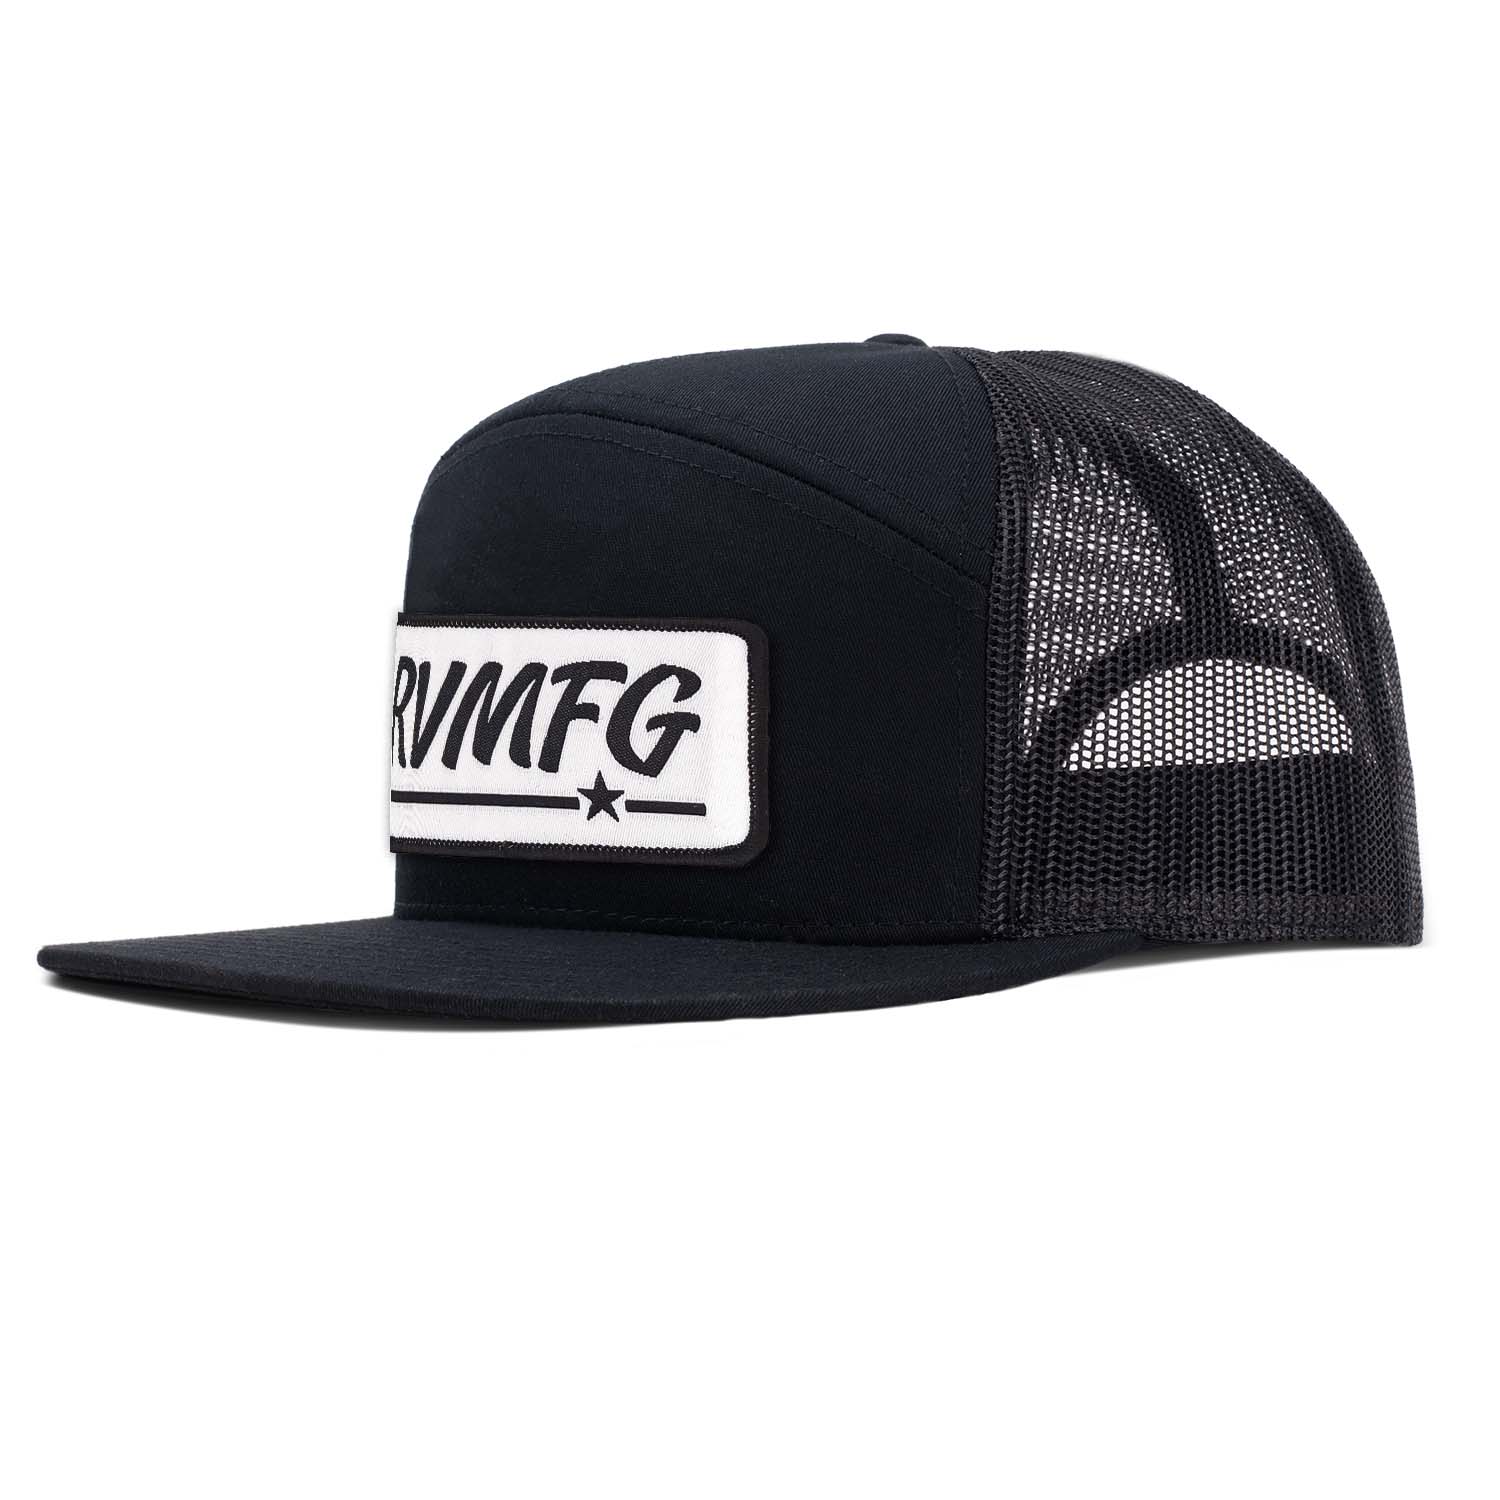 Shop | RVMFG 7 Panel Trucker Hat -Black | Revolution Mfg